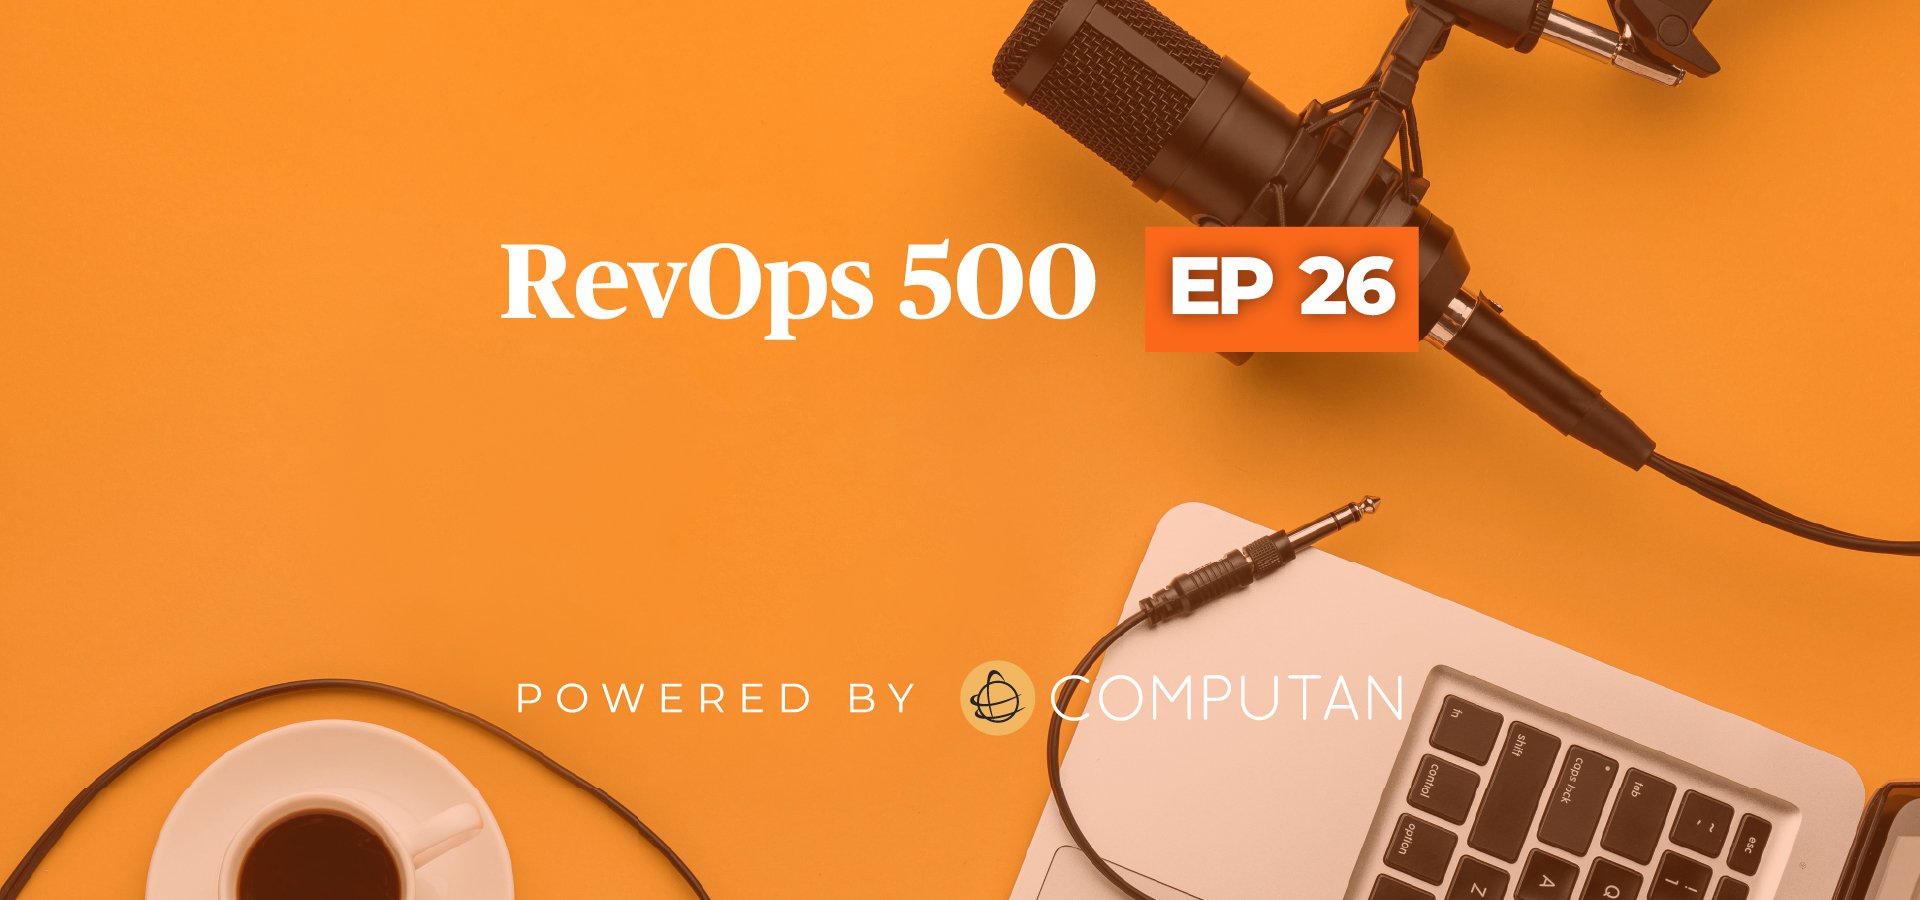 RevOps Episode 26